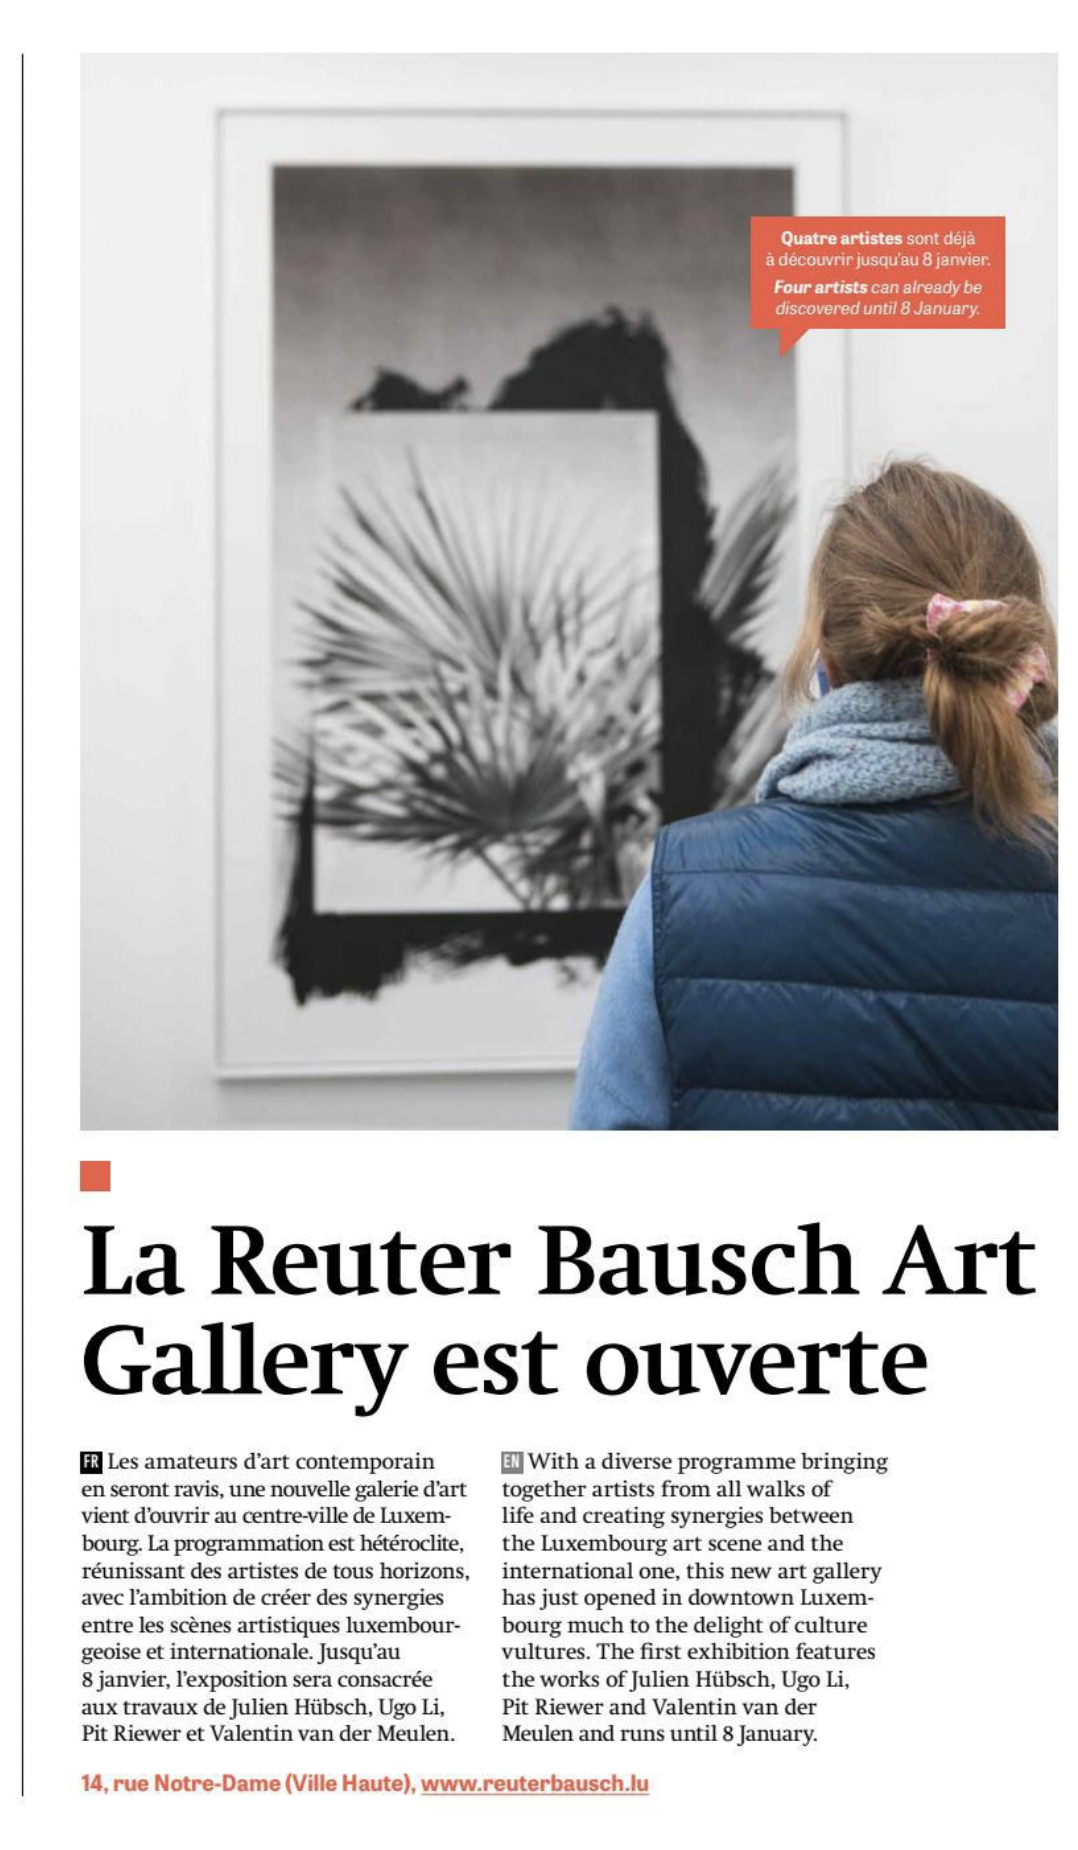 La Reuter Bausch Art Gallery est ouverte